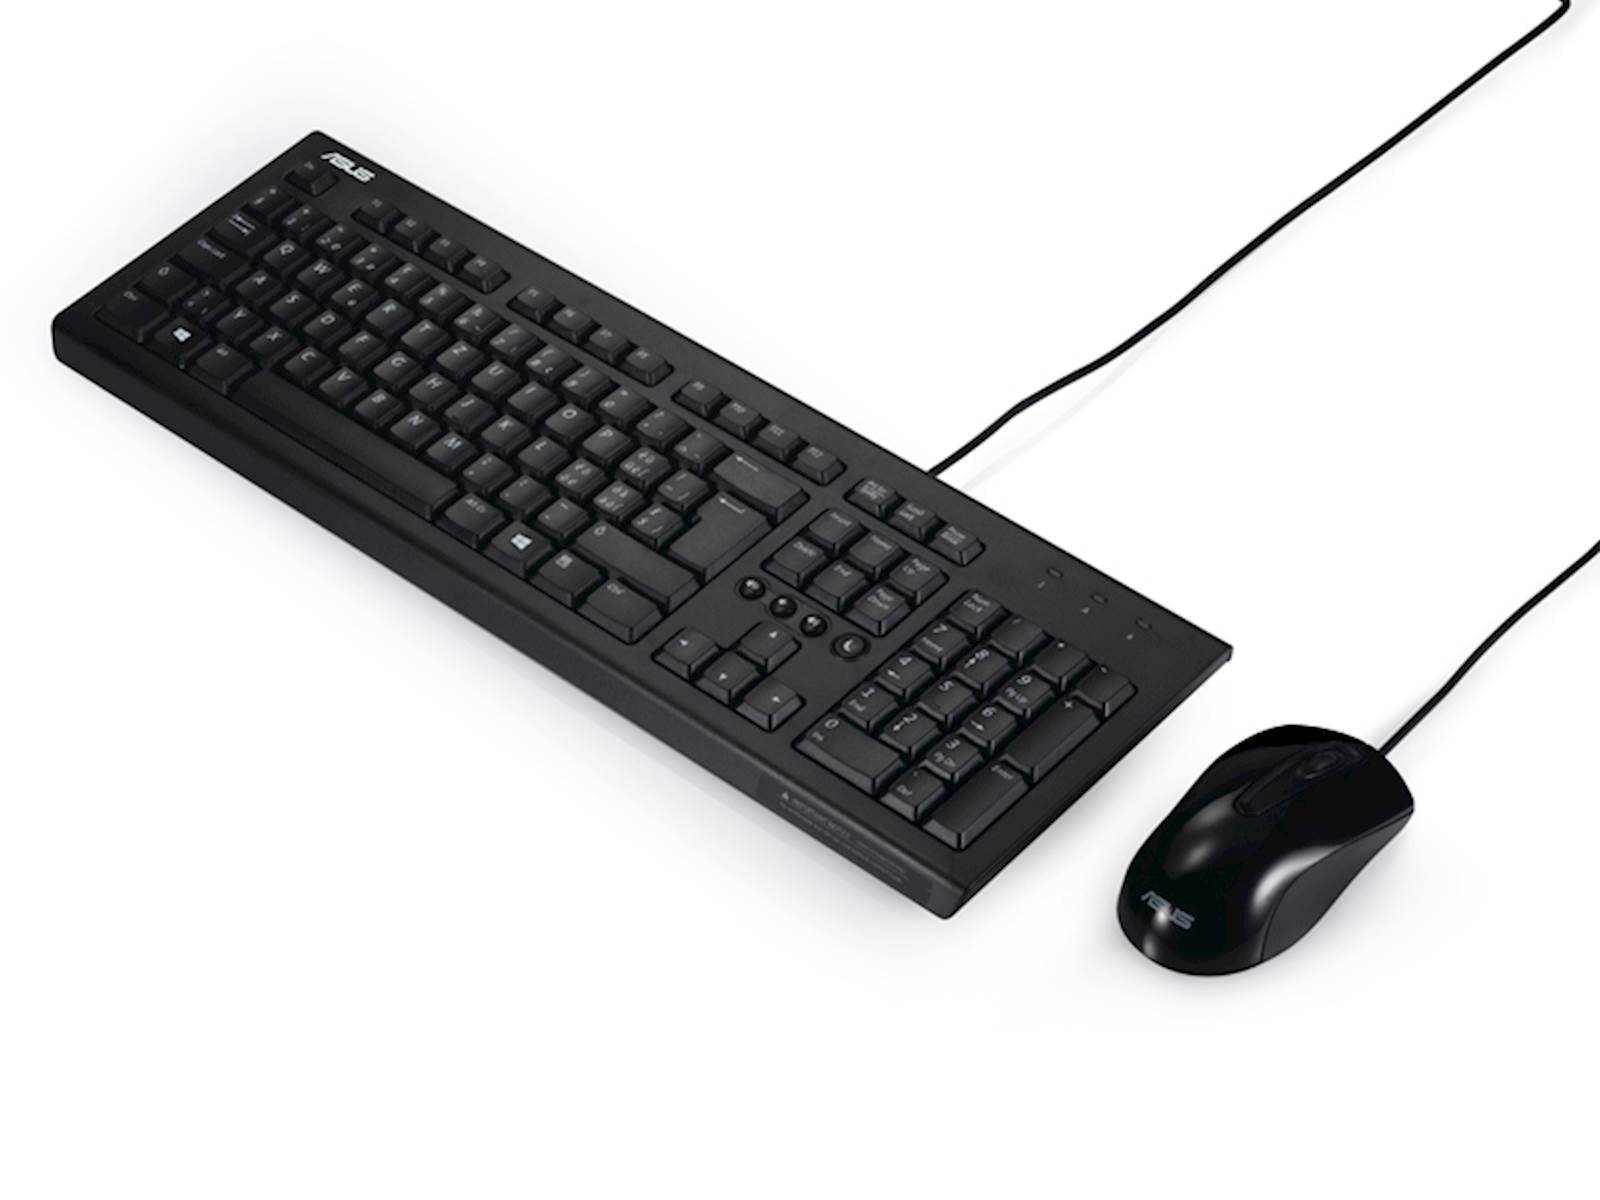 Tastatura i miš ASUS U2000 Žični komplet USB